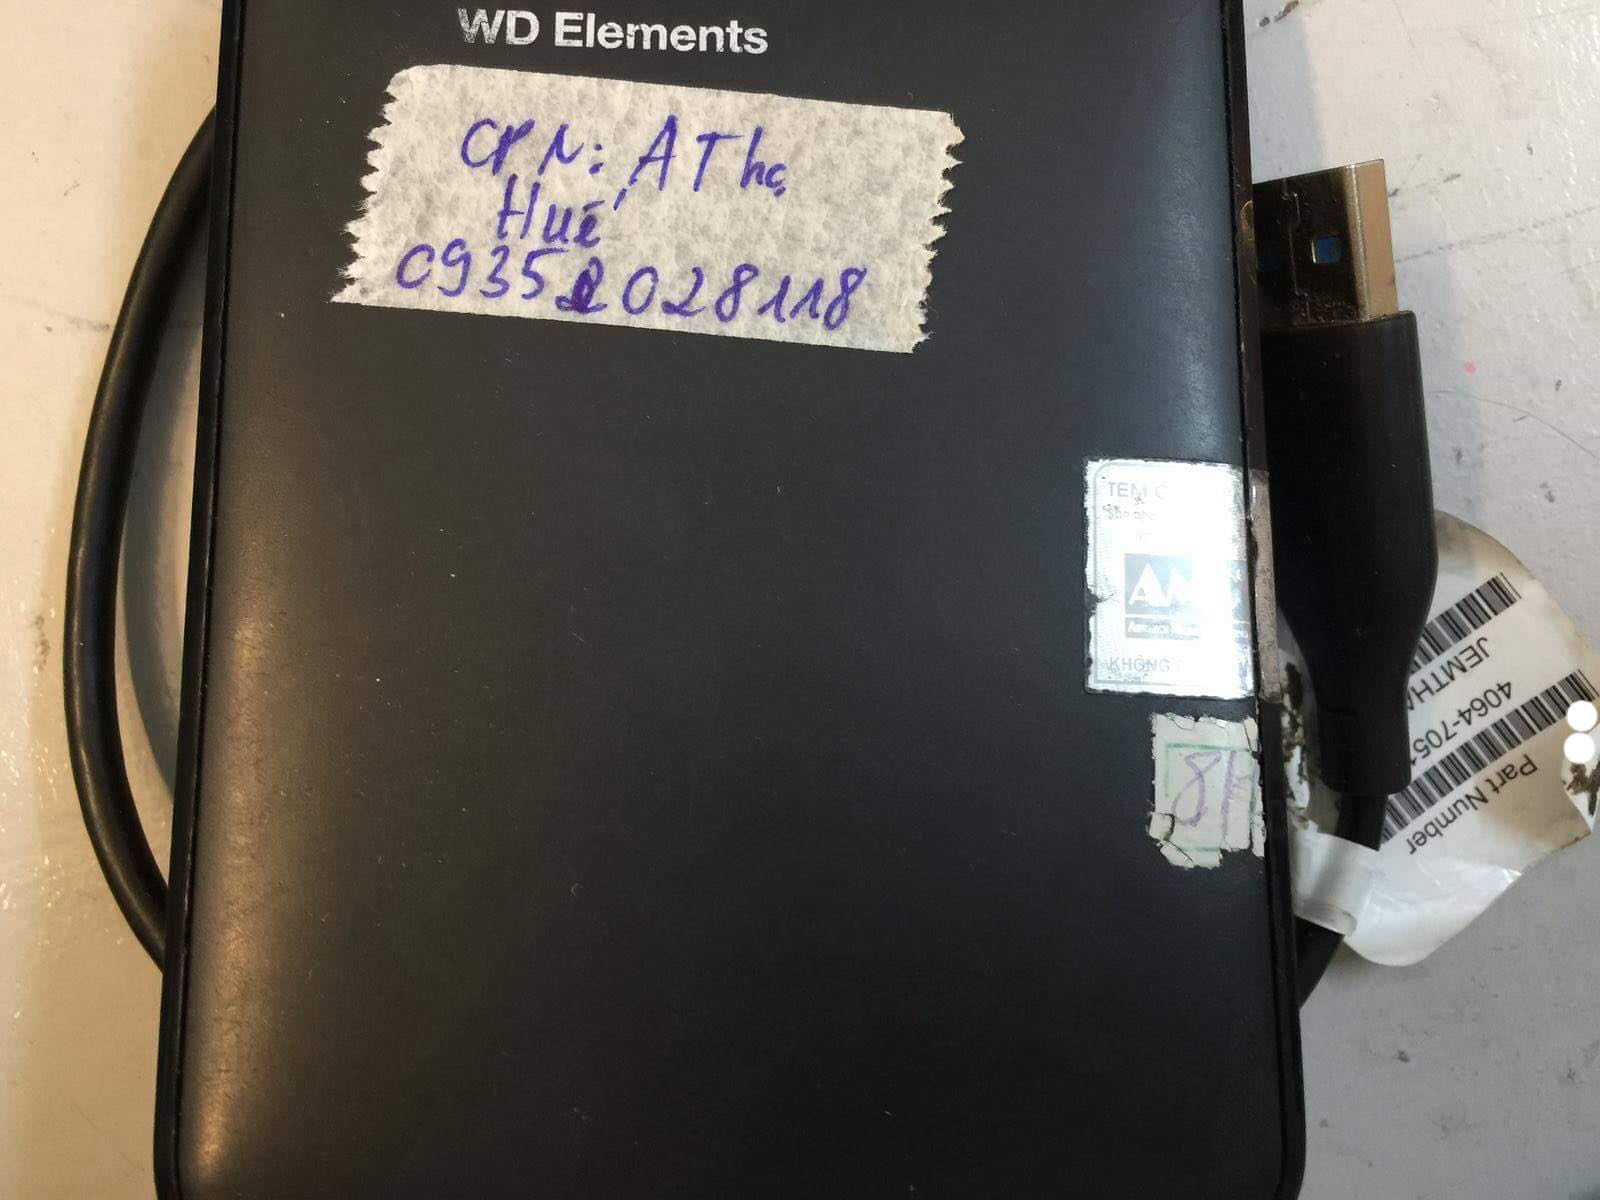 Cứu dữ liệu ổ cứng Western 1TB lỗi cơ tại Huế 15/12/2018 - cuumaytinh